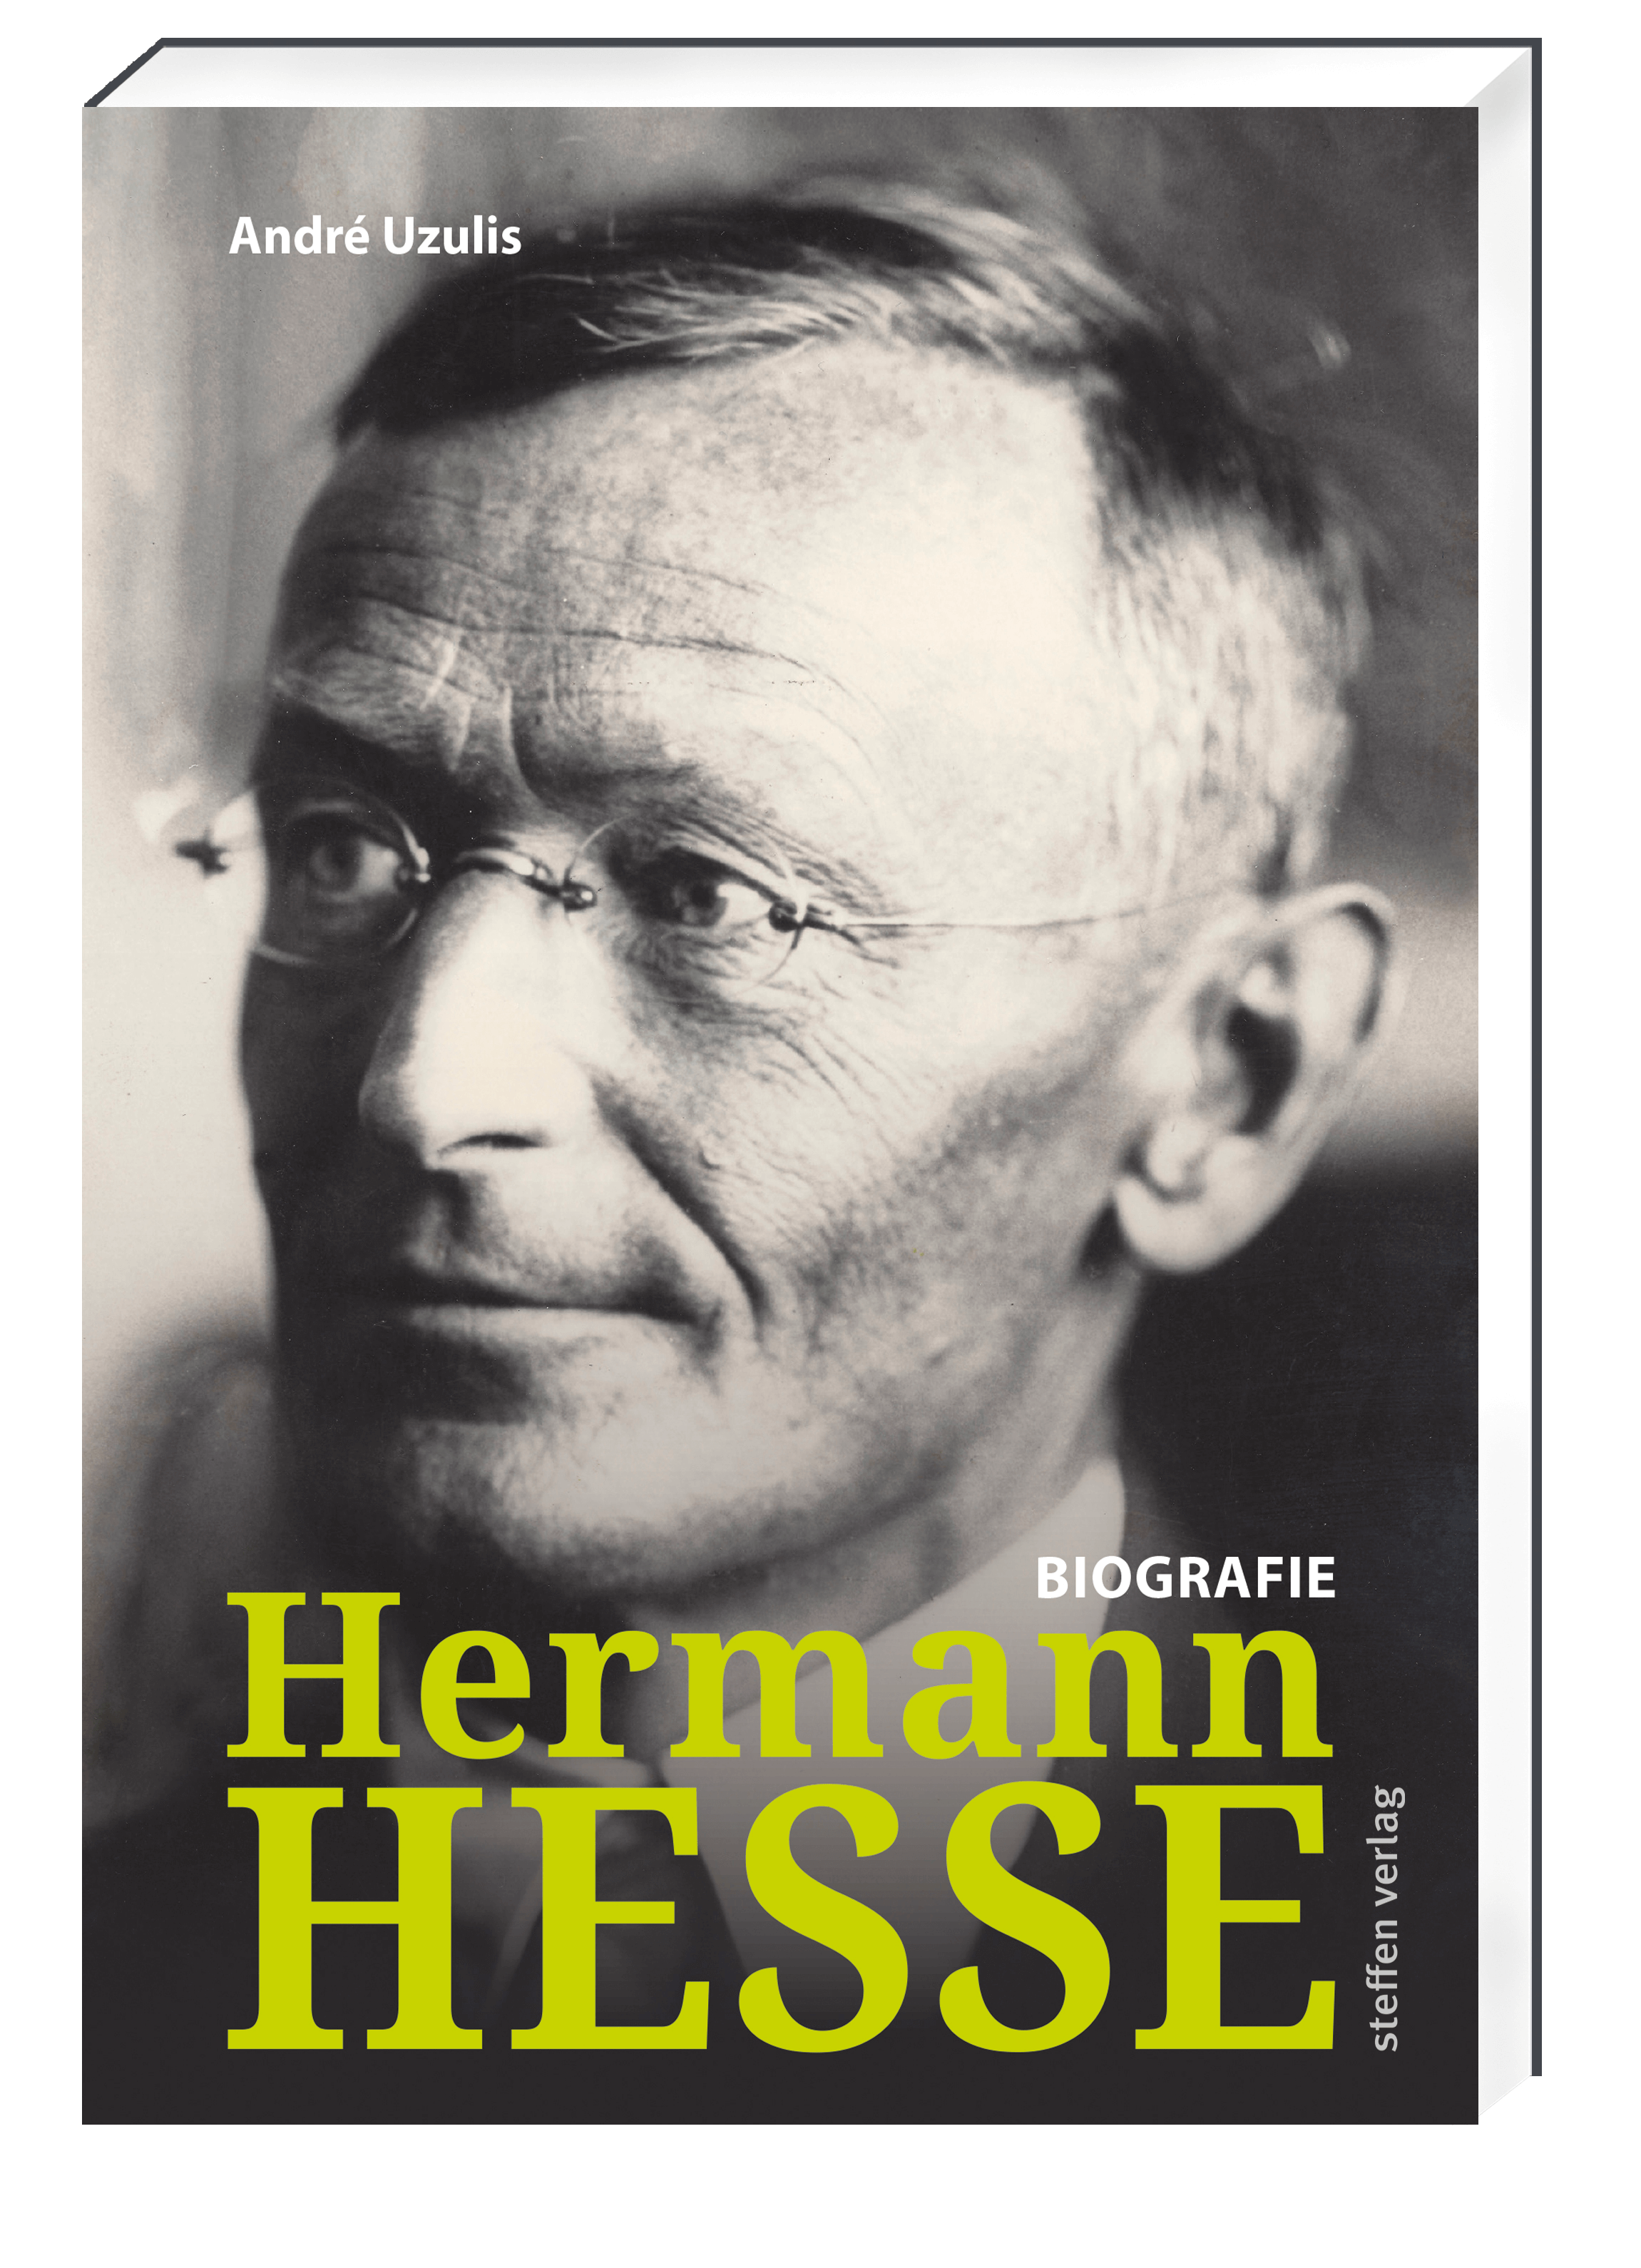 Hermann Hesse. Lesung und Gespräch zur neuen Biografie von André Uzulis